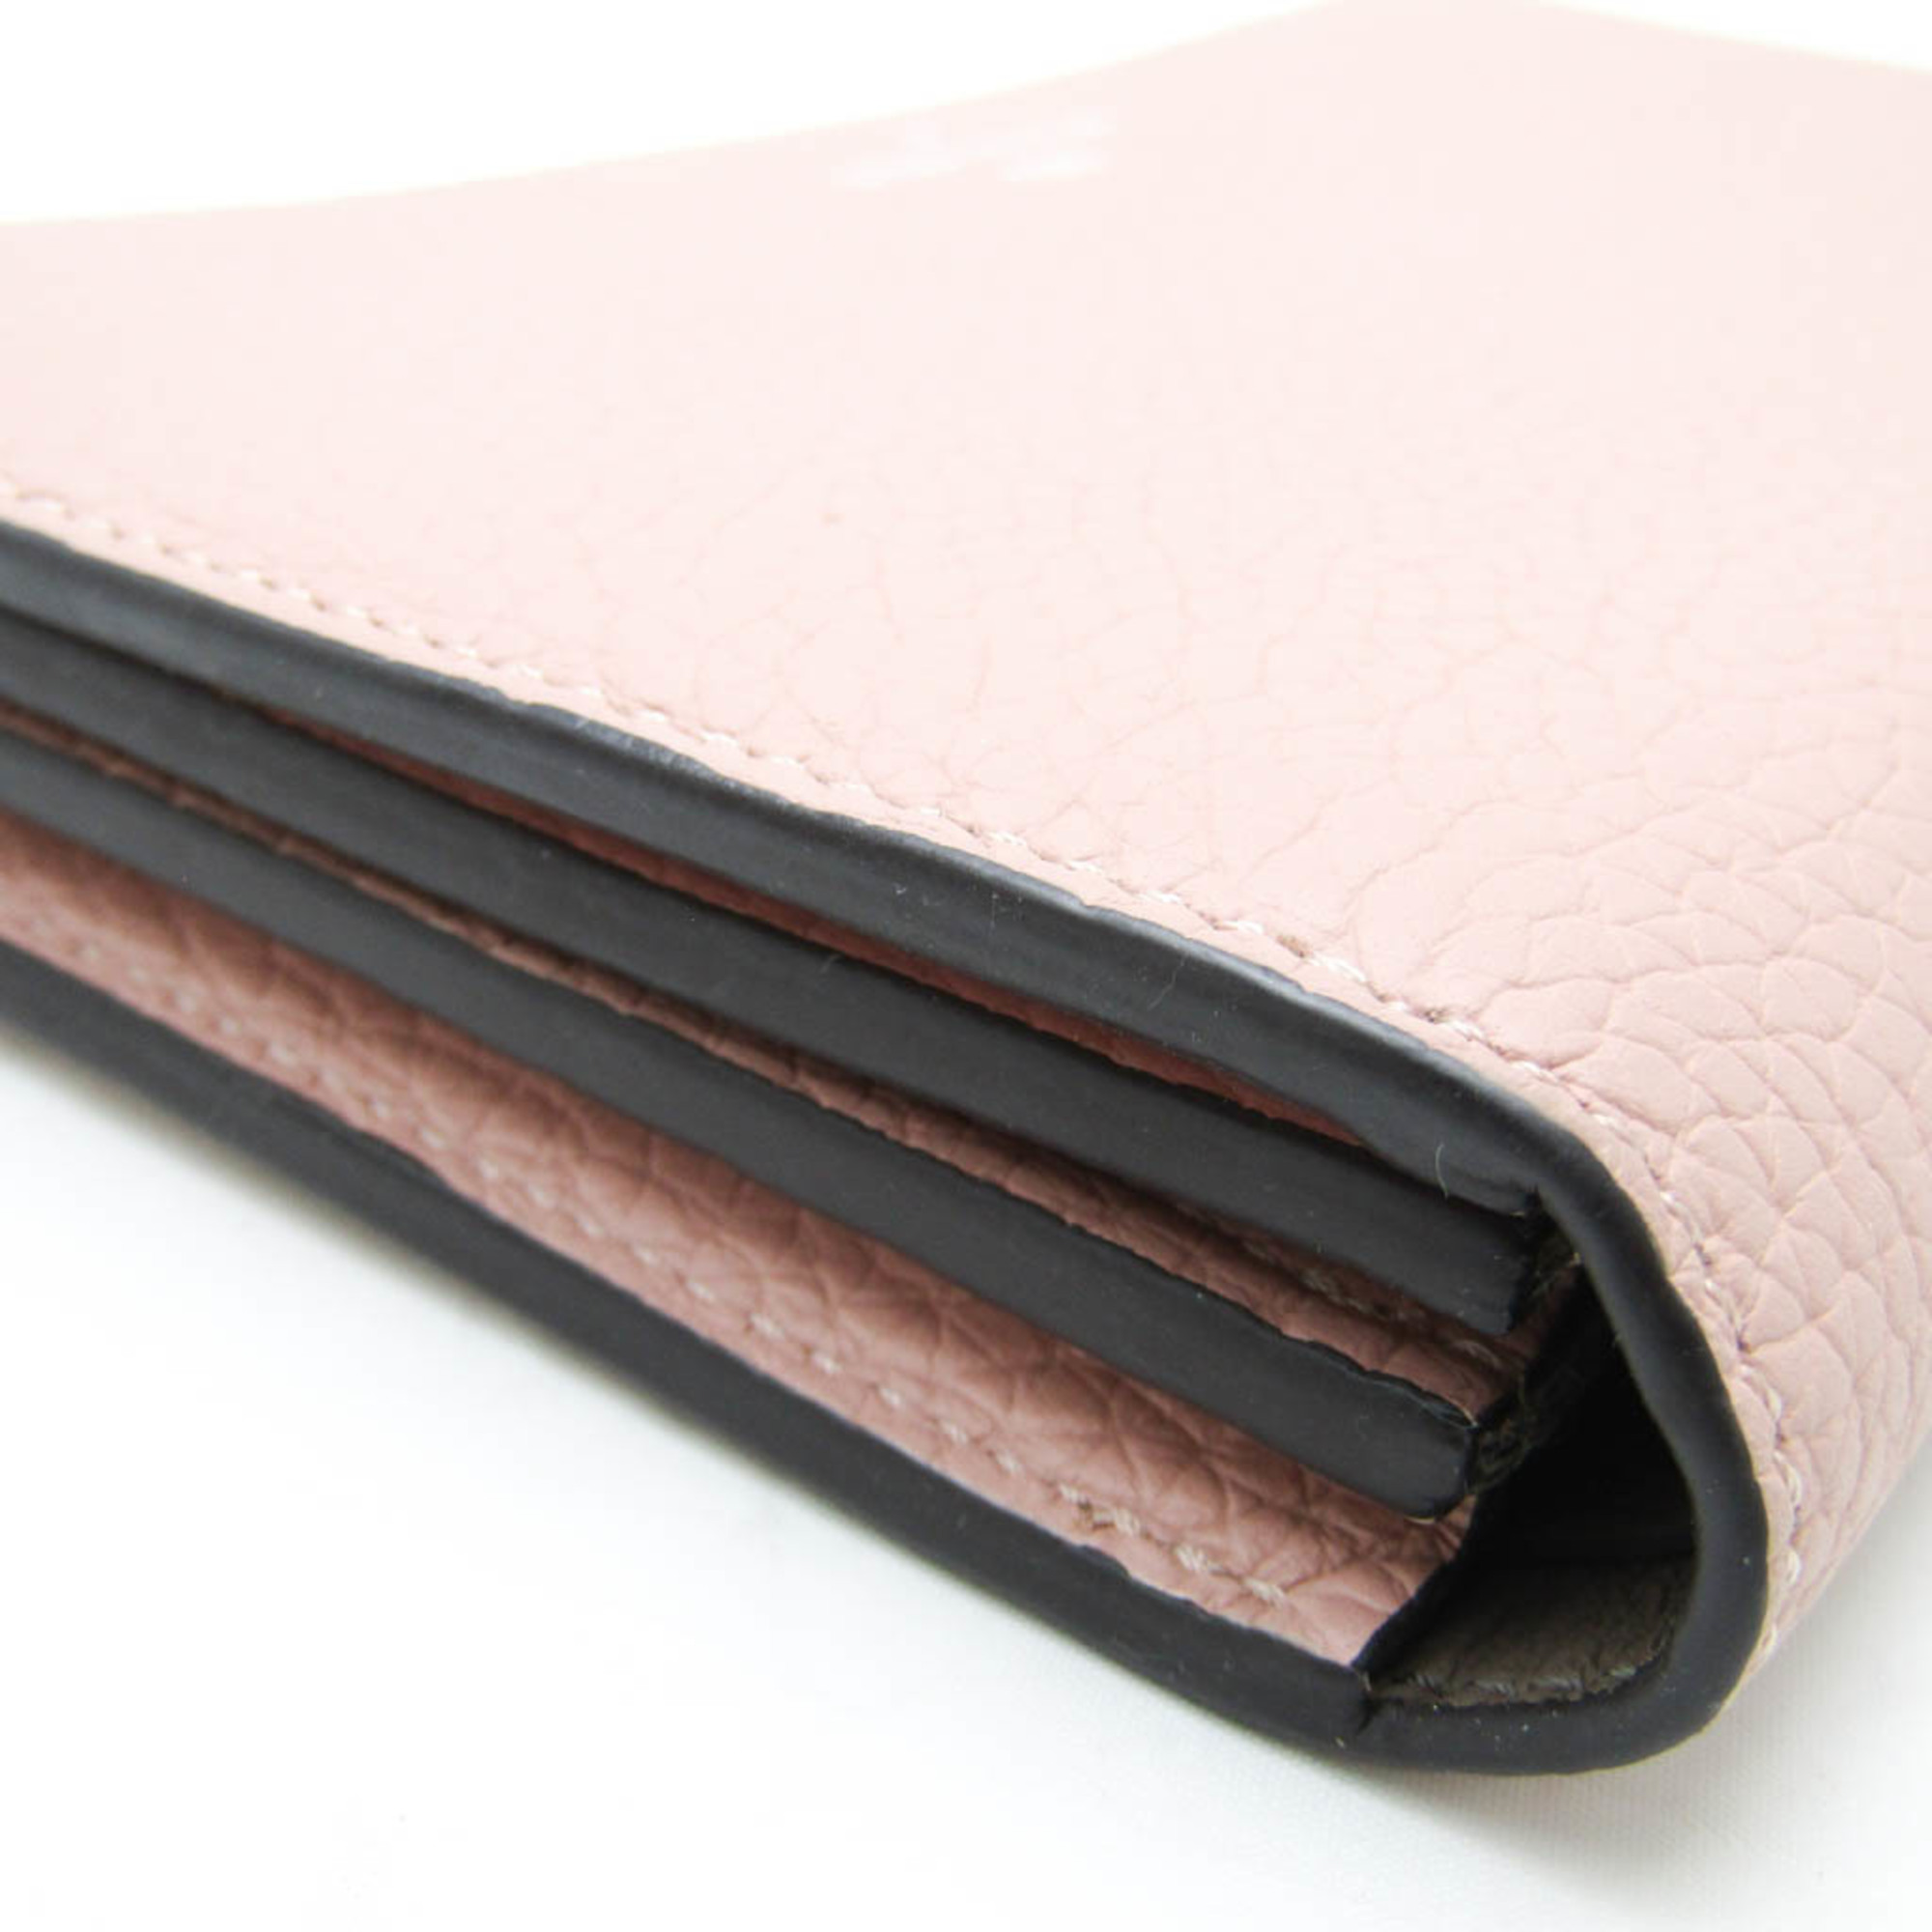 Louis Vuitton Portefeuille Comet M60148 Women's Veau Cachemire Leather Long Wallet (bi-fold) Magnolia